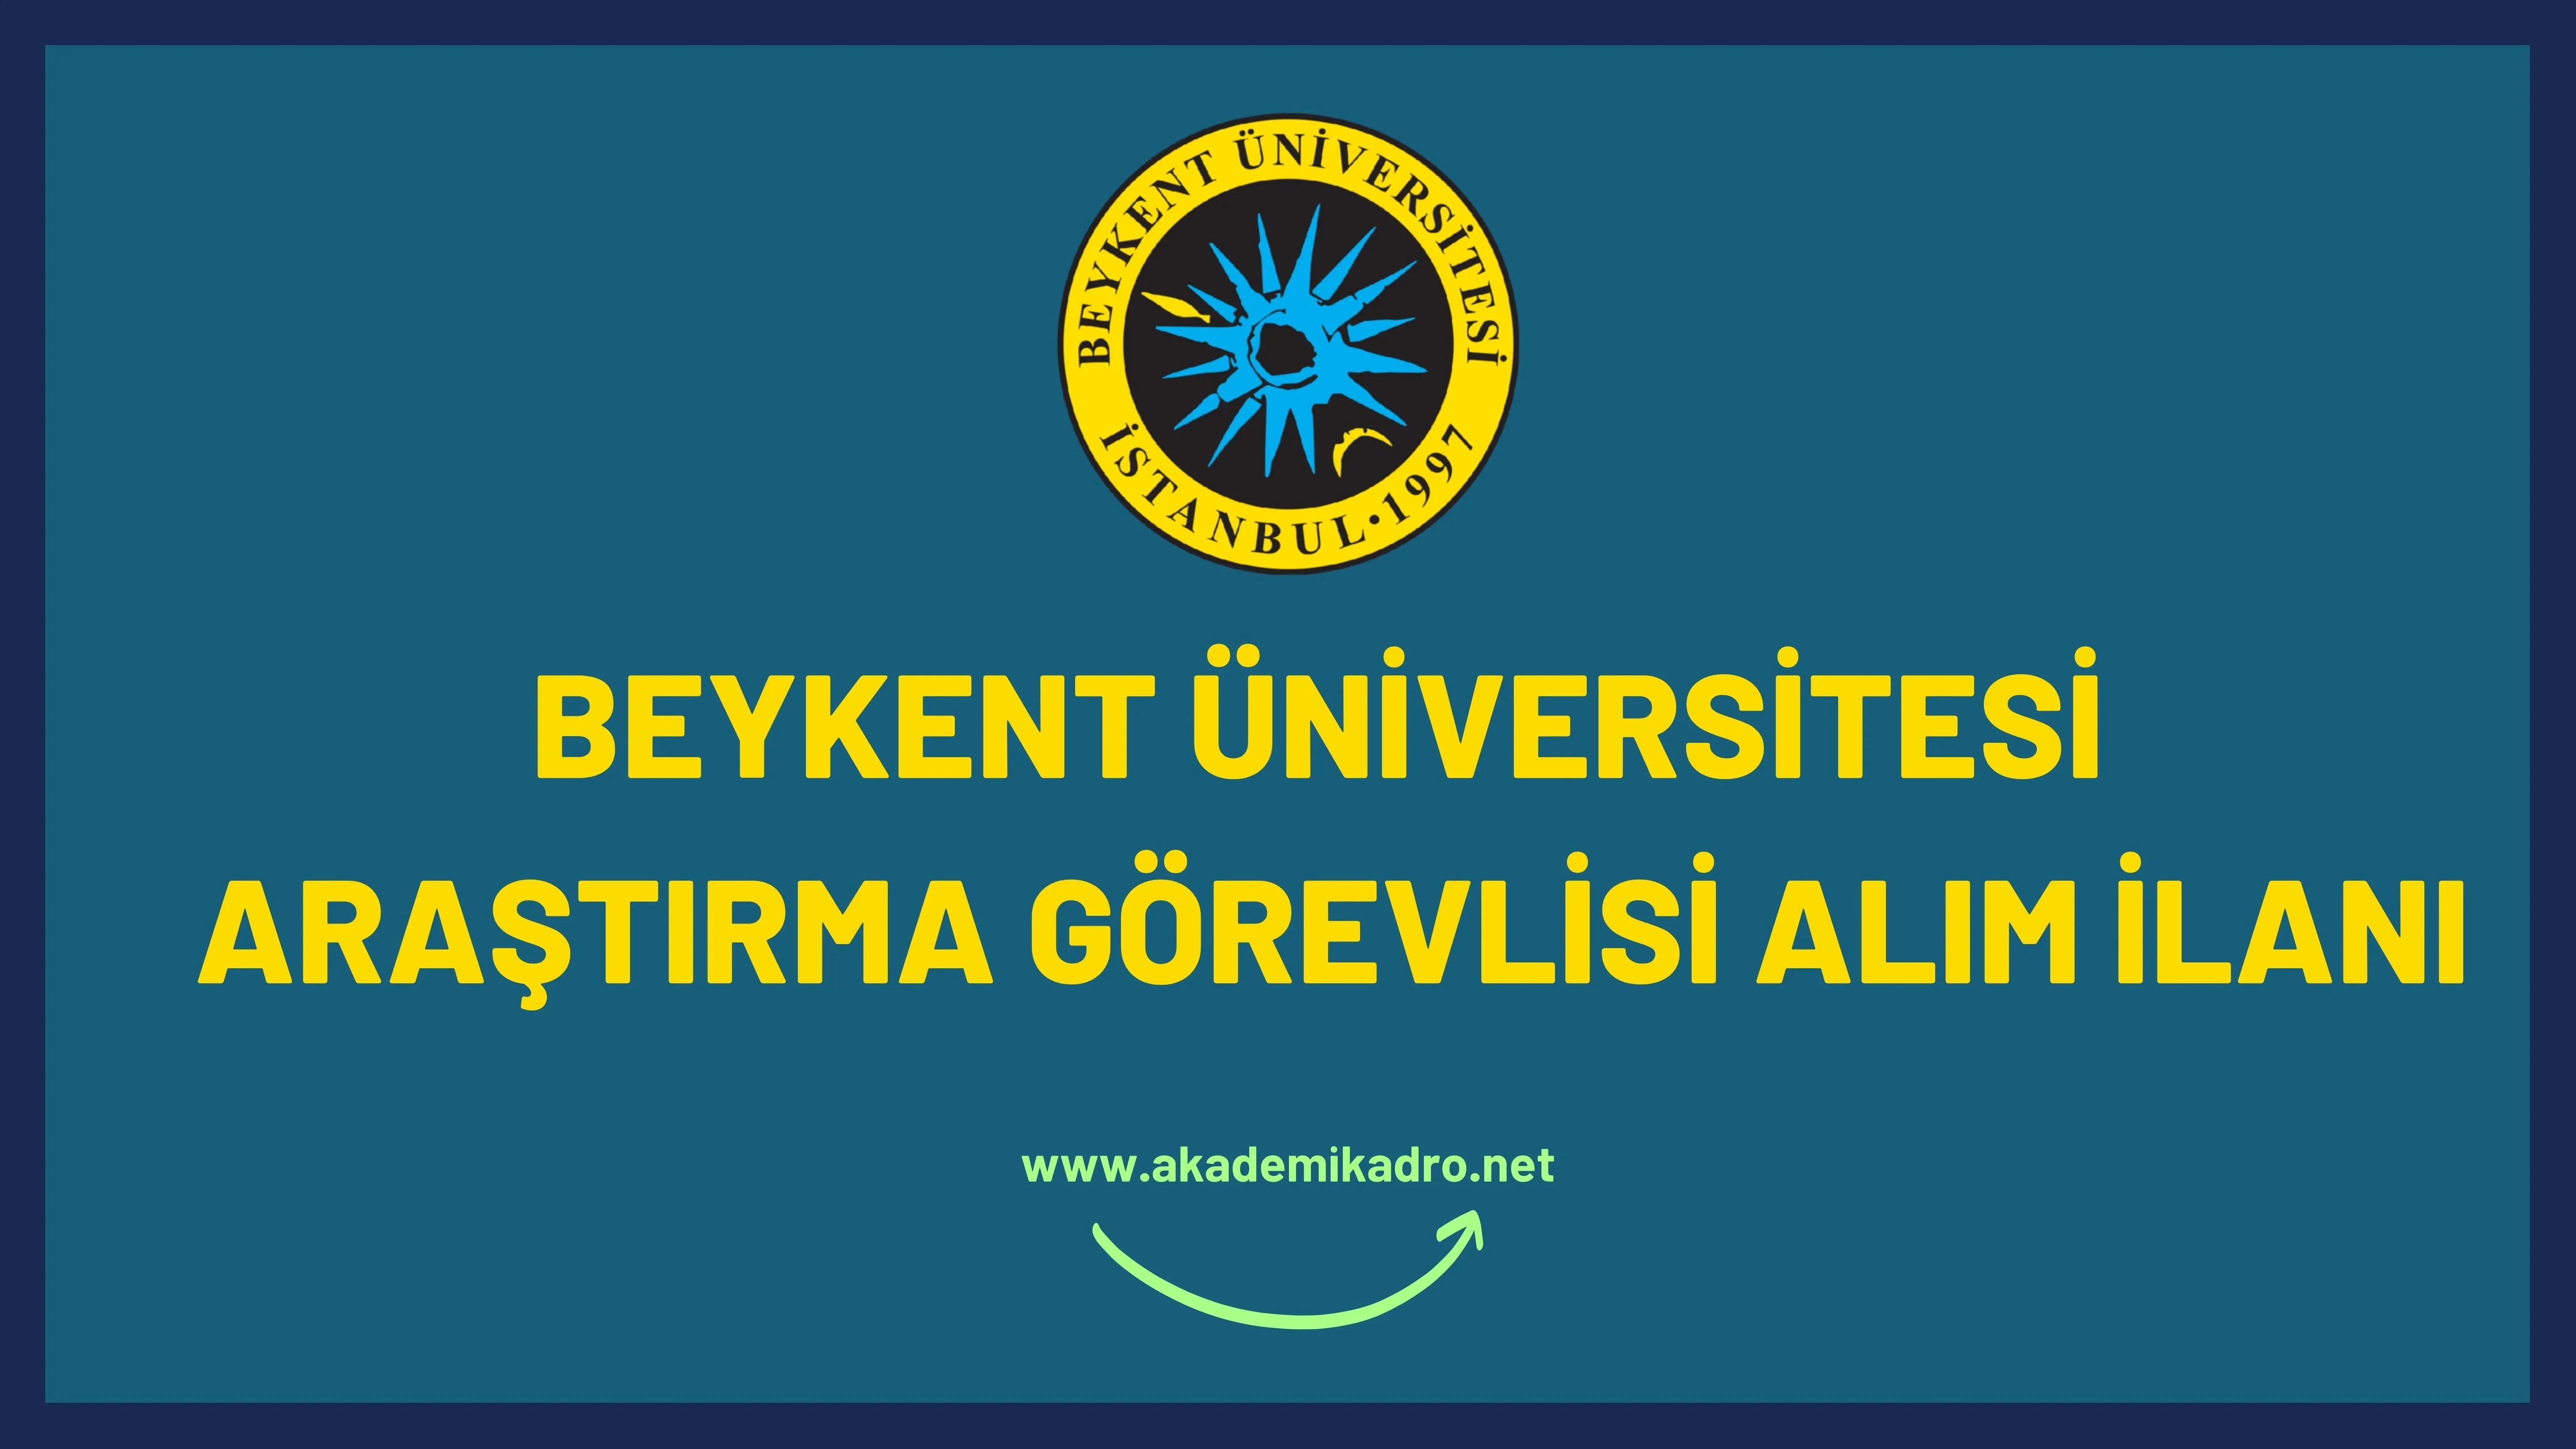 Beykent Üniversitesi 5 Araştırma görevlisi alacak.